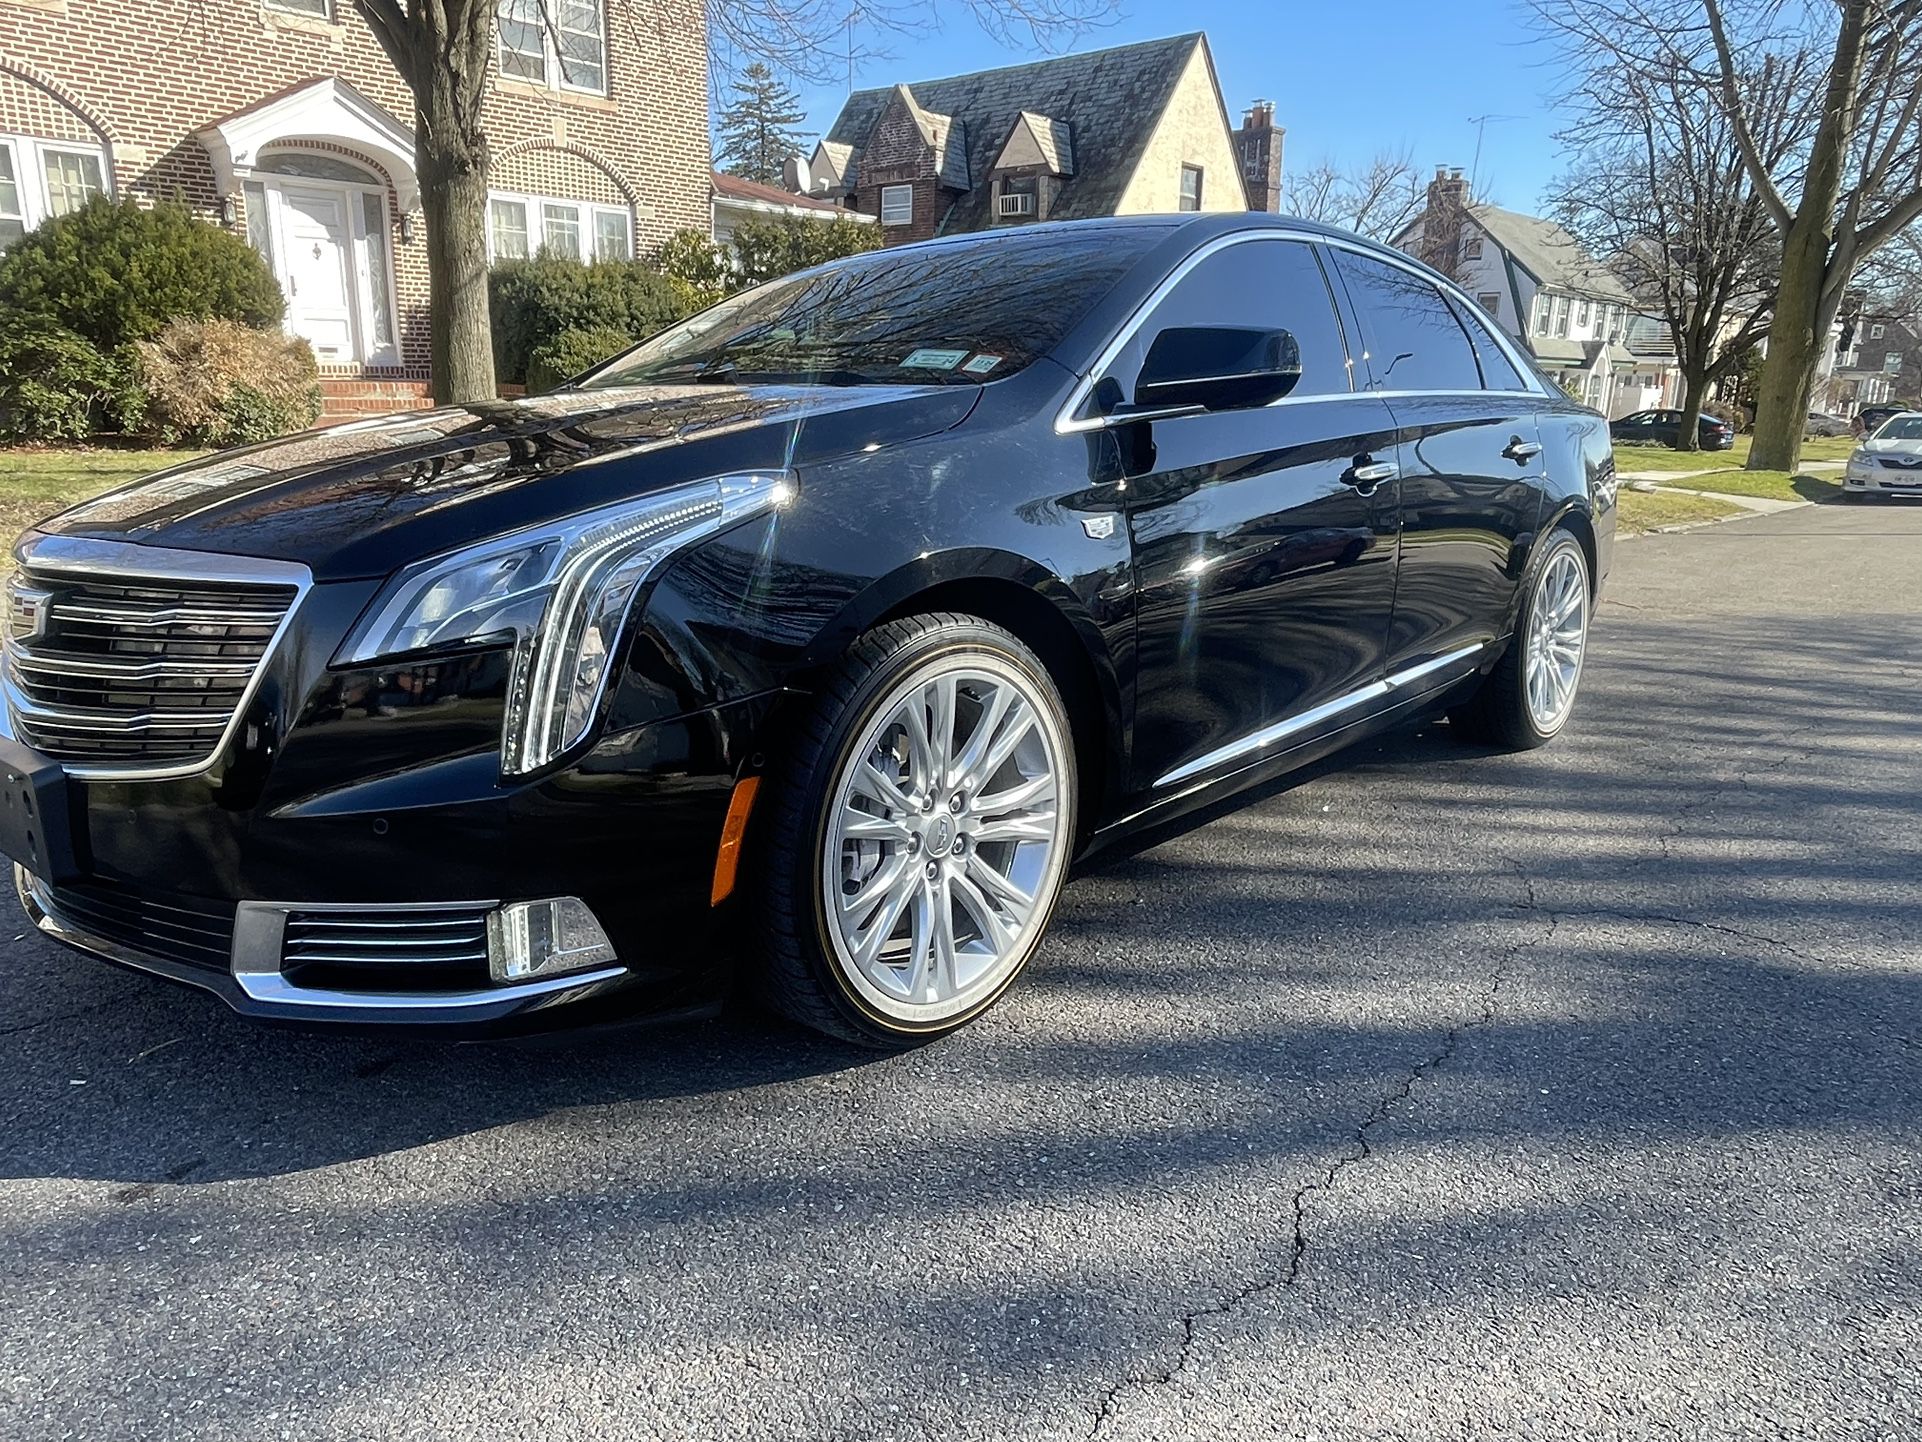 2019 Cadillac XTS